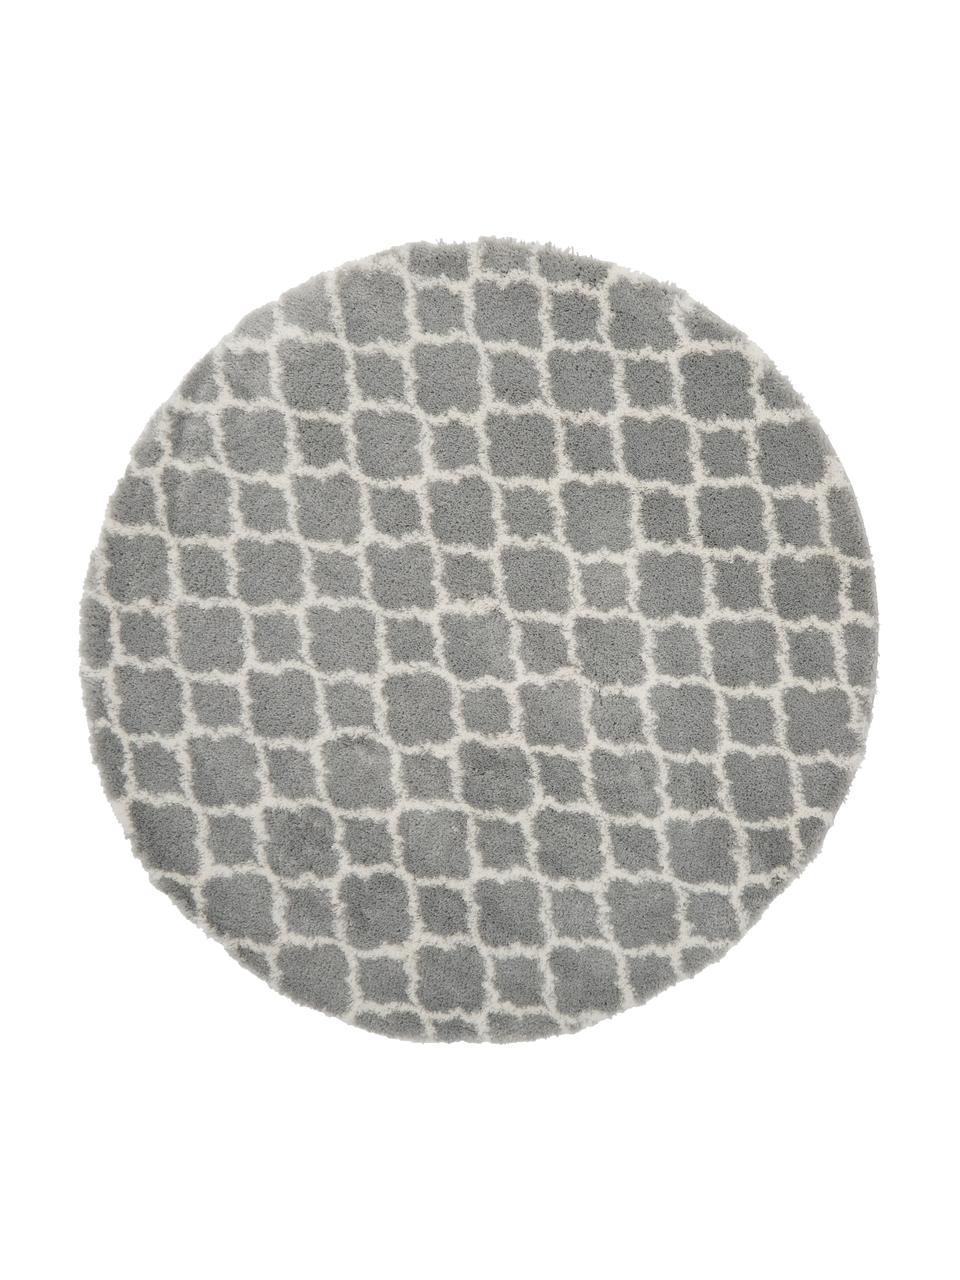 Hoogpolig vloerkleed Mona in grijs/crèmewit, Bovenzijde: 100% polypropyleen, Onderzijde: 78% jute, 14% katoen, 8% , Grijs, crèmewit, Ø 150 cm (maat M)